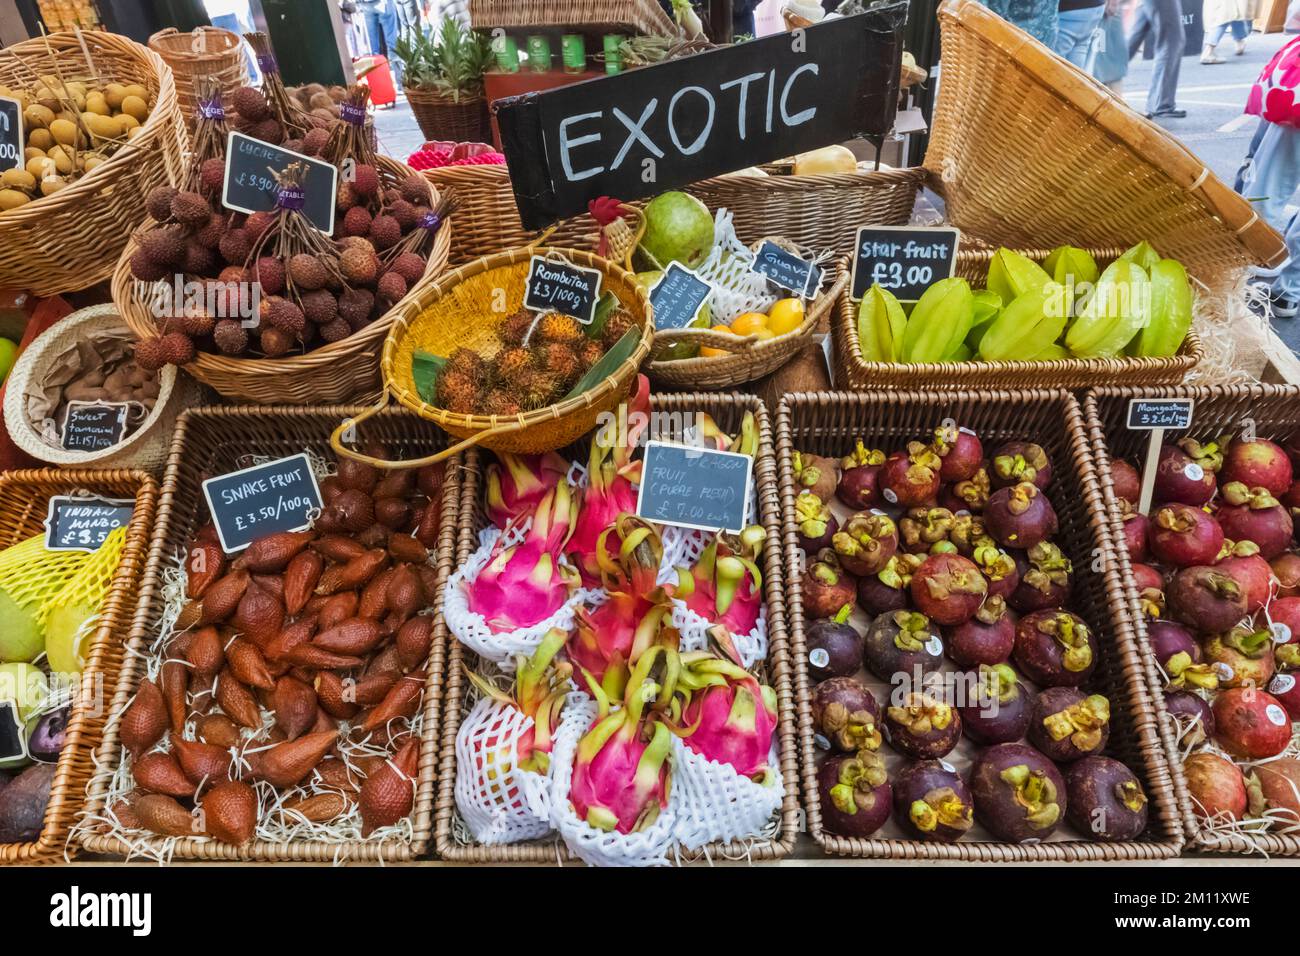 Borough Market, Display of Exotic Fruit, Southwark, London, England Stock Photo